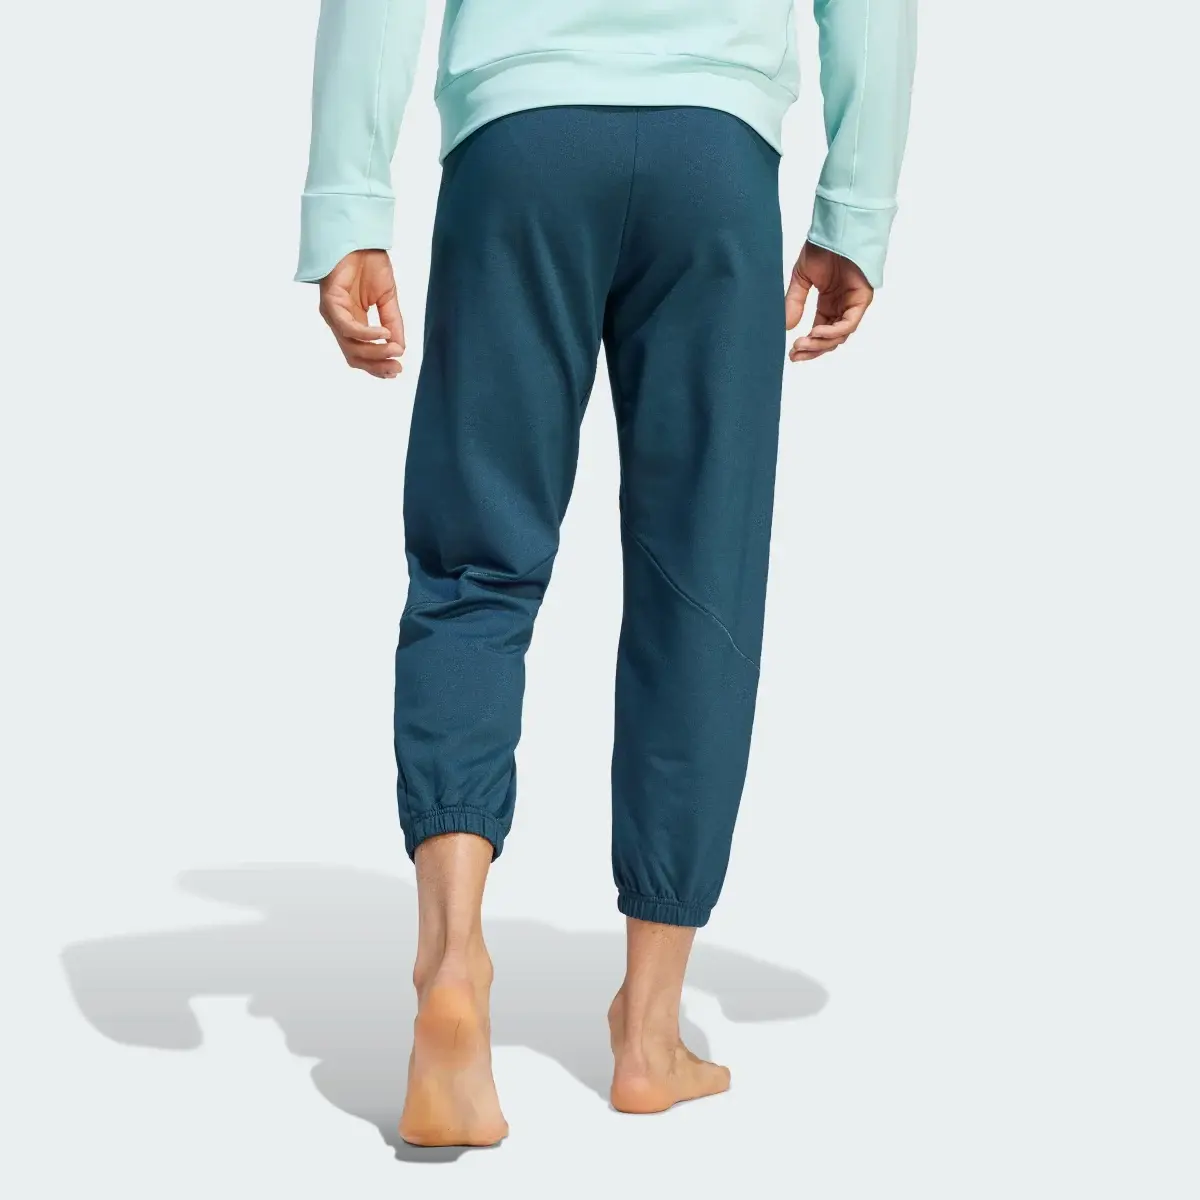 Adidas Designed for Training Yoga Training 7/8 Pants. 2